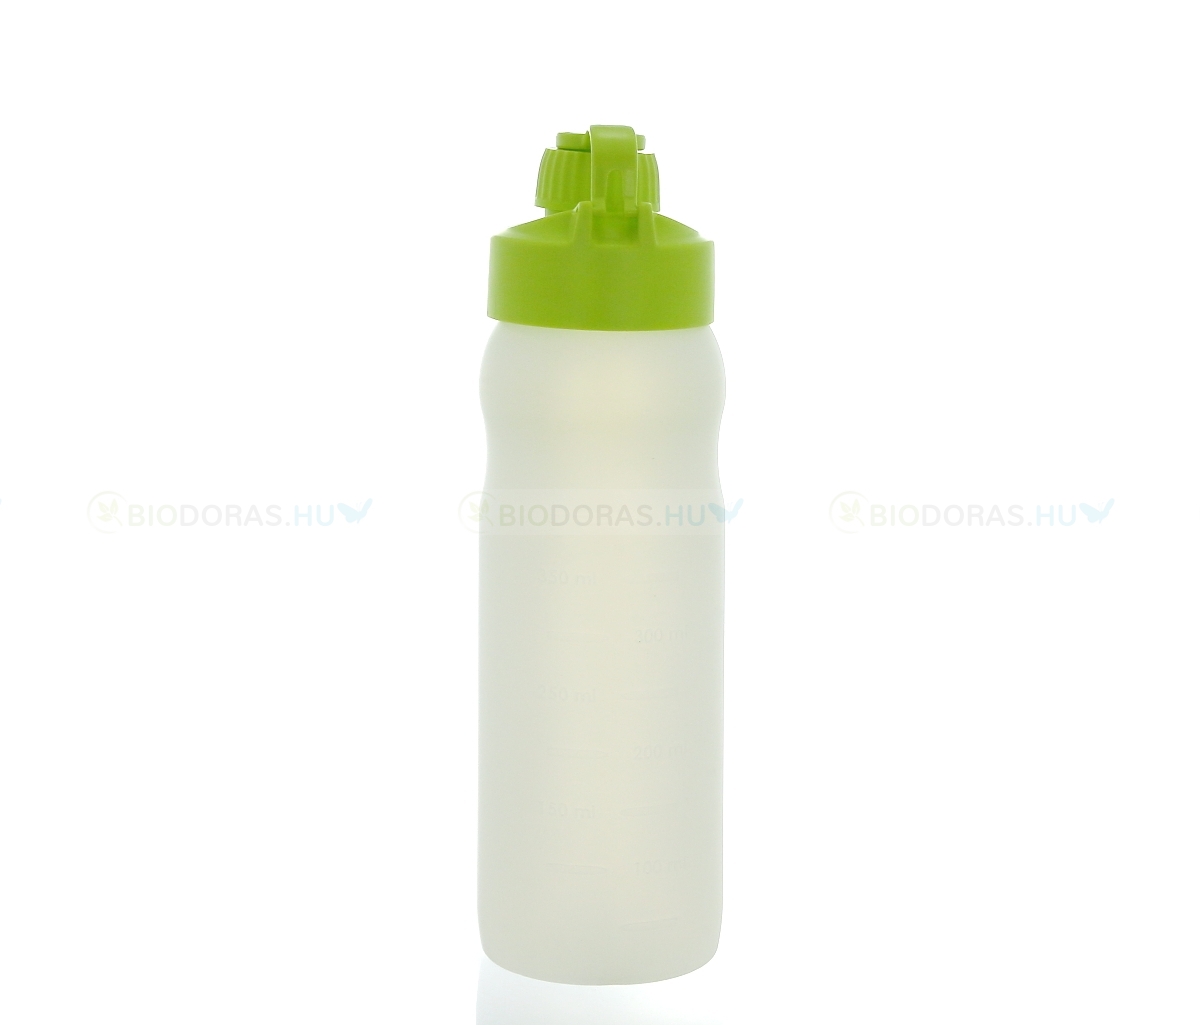 BIODORA Bioműanyag kulacs (sportpalack) visszazárható kupakkal, fehér-neonzöld színben - 500 ml